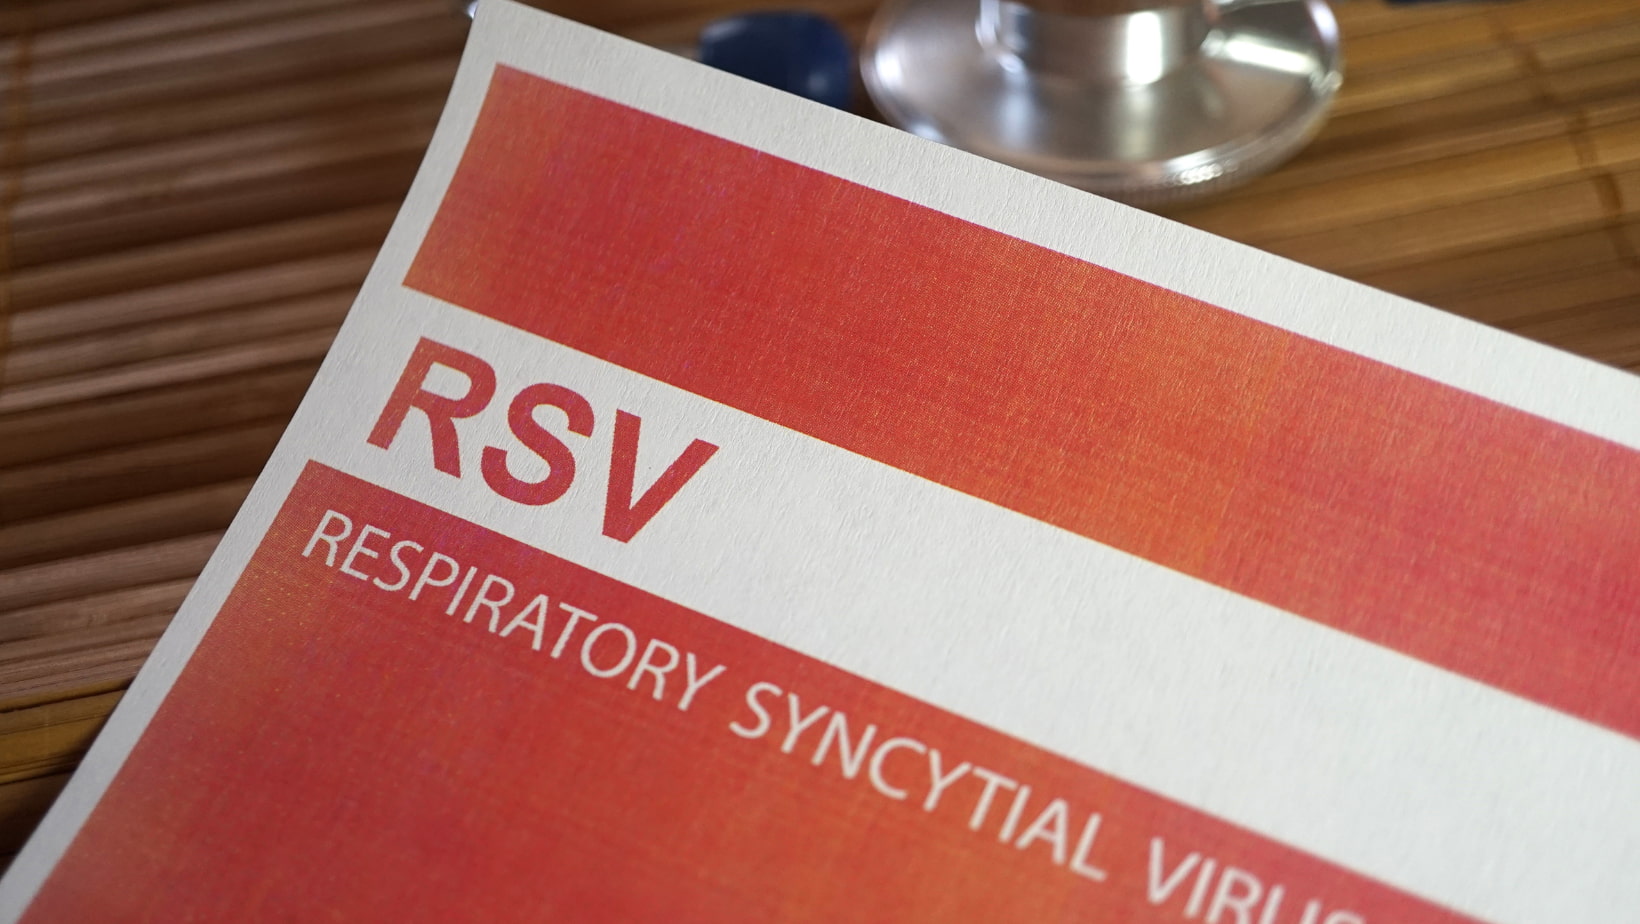 RSV symptoms